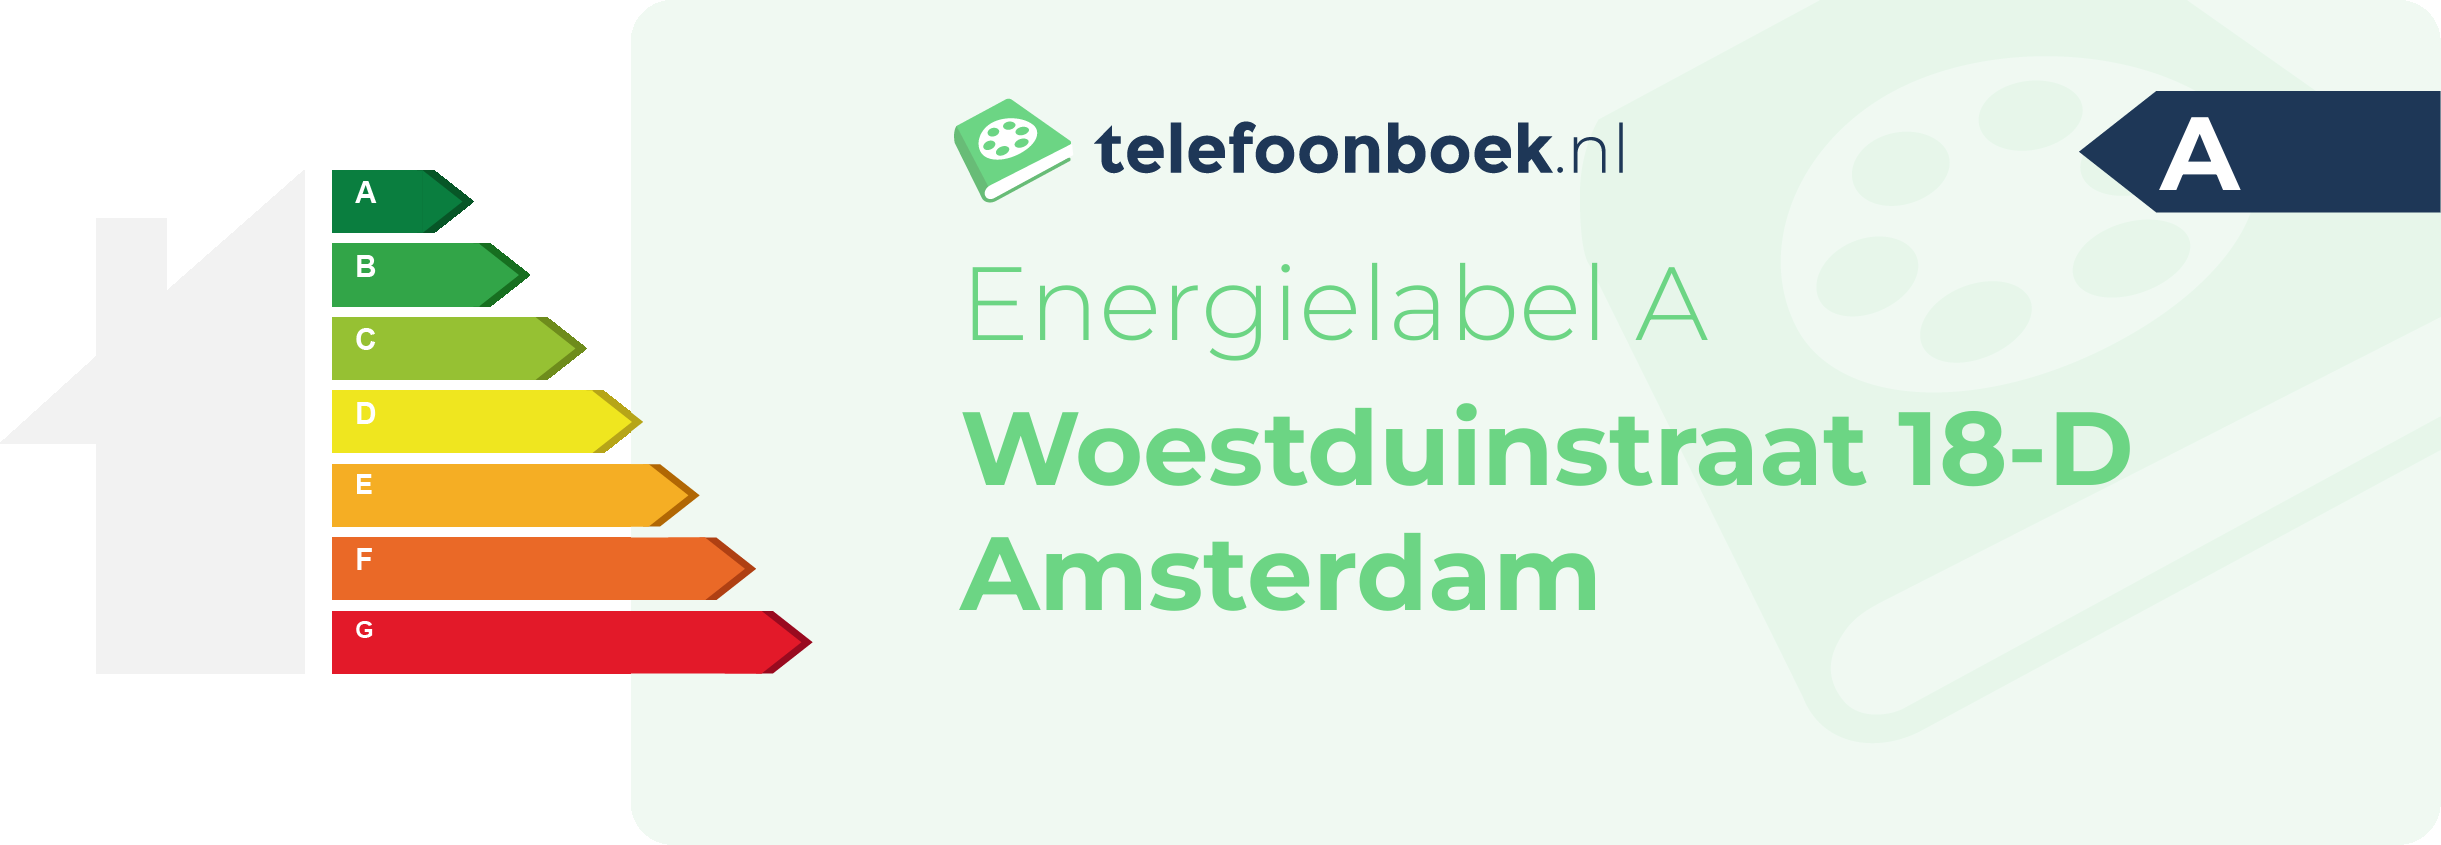 Energielabel Woestduinstraat 18-D Amsterdam